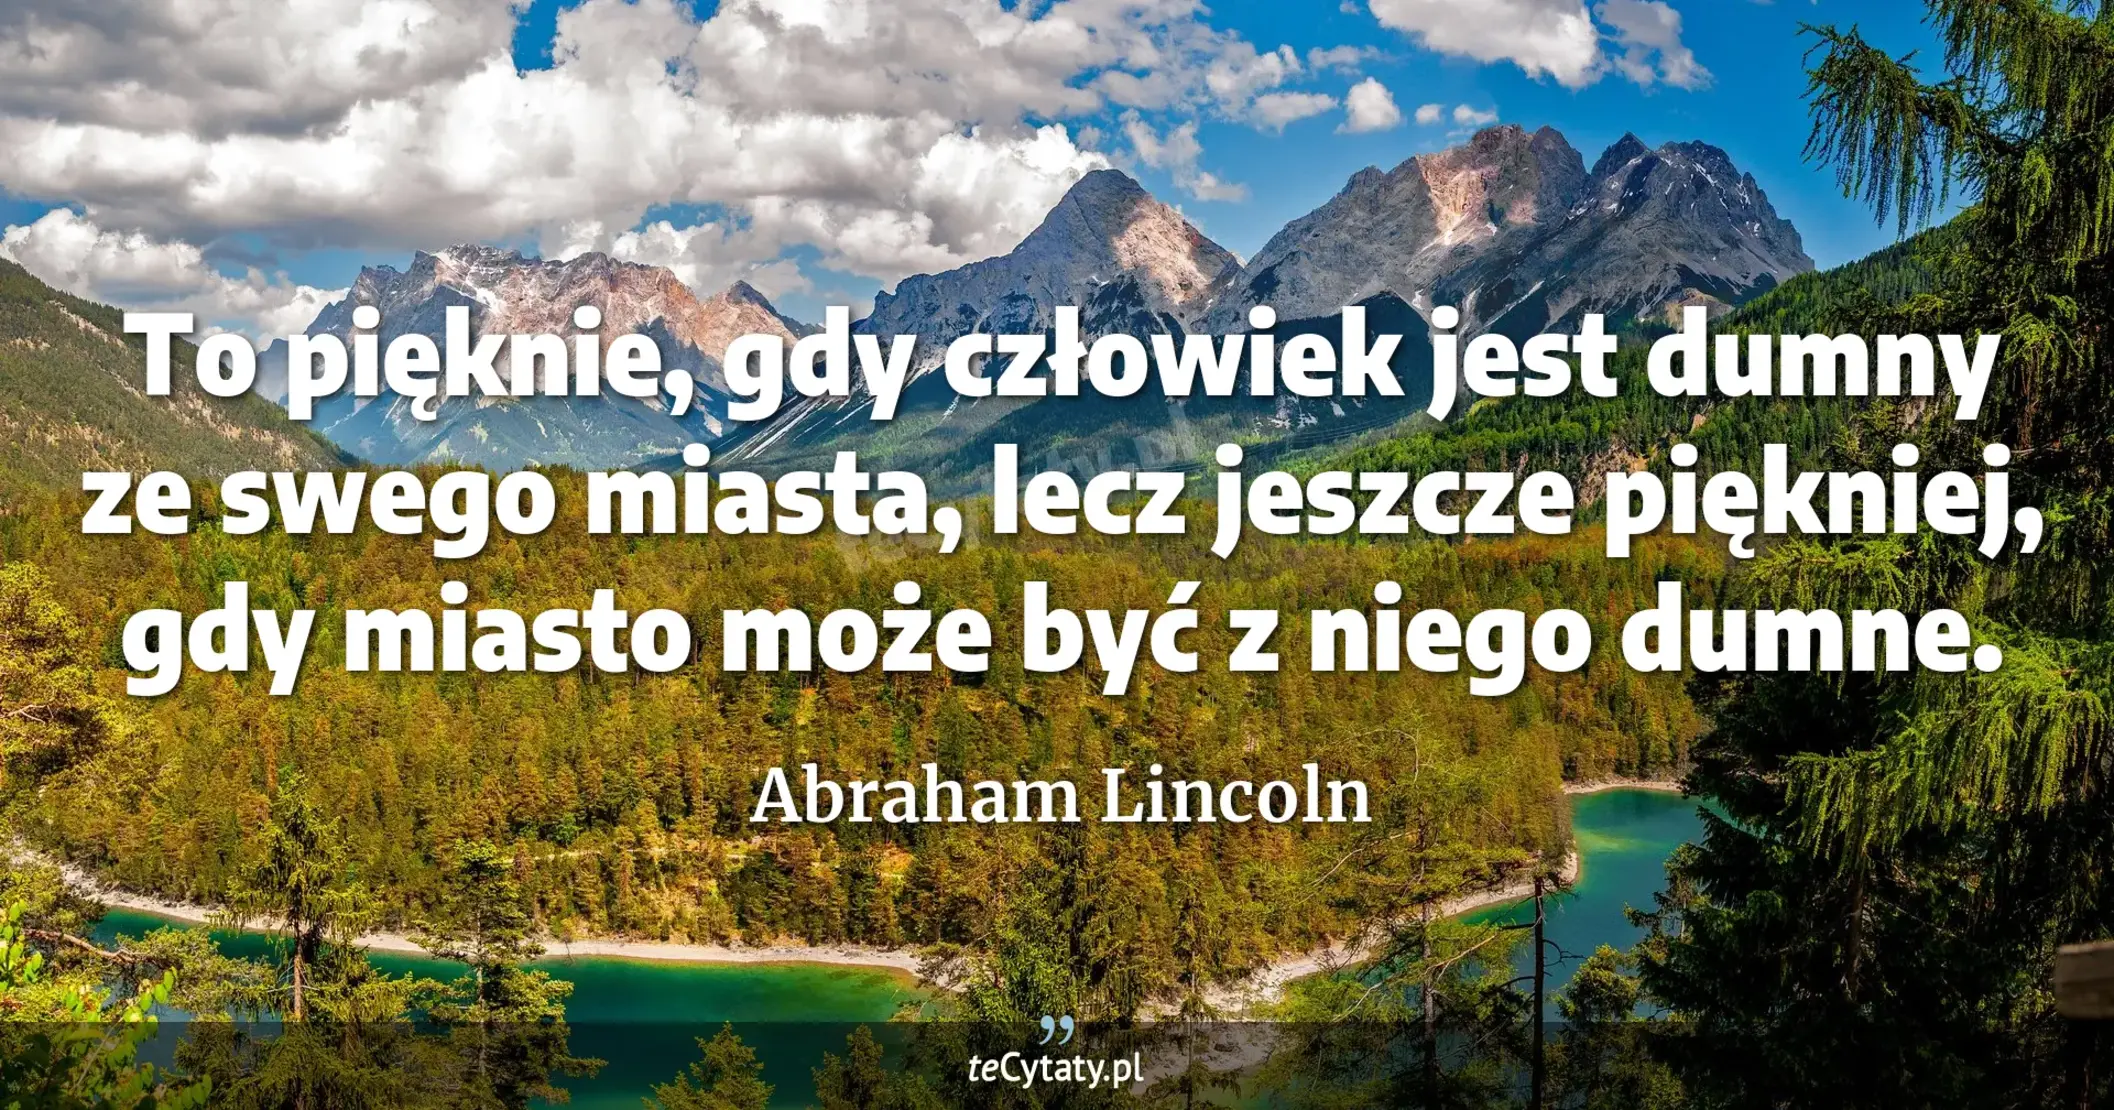 To pięknie, gdy człowiek jest dumny ze swego miasta, lecz jeszcze piękniej, gdy miasto może być z niego dumne. - Abraham Lincoln